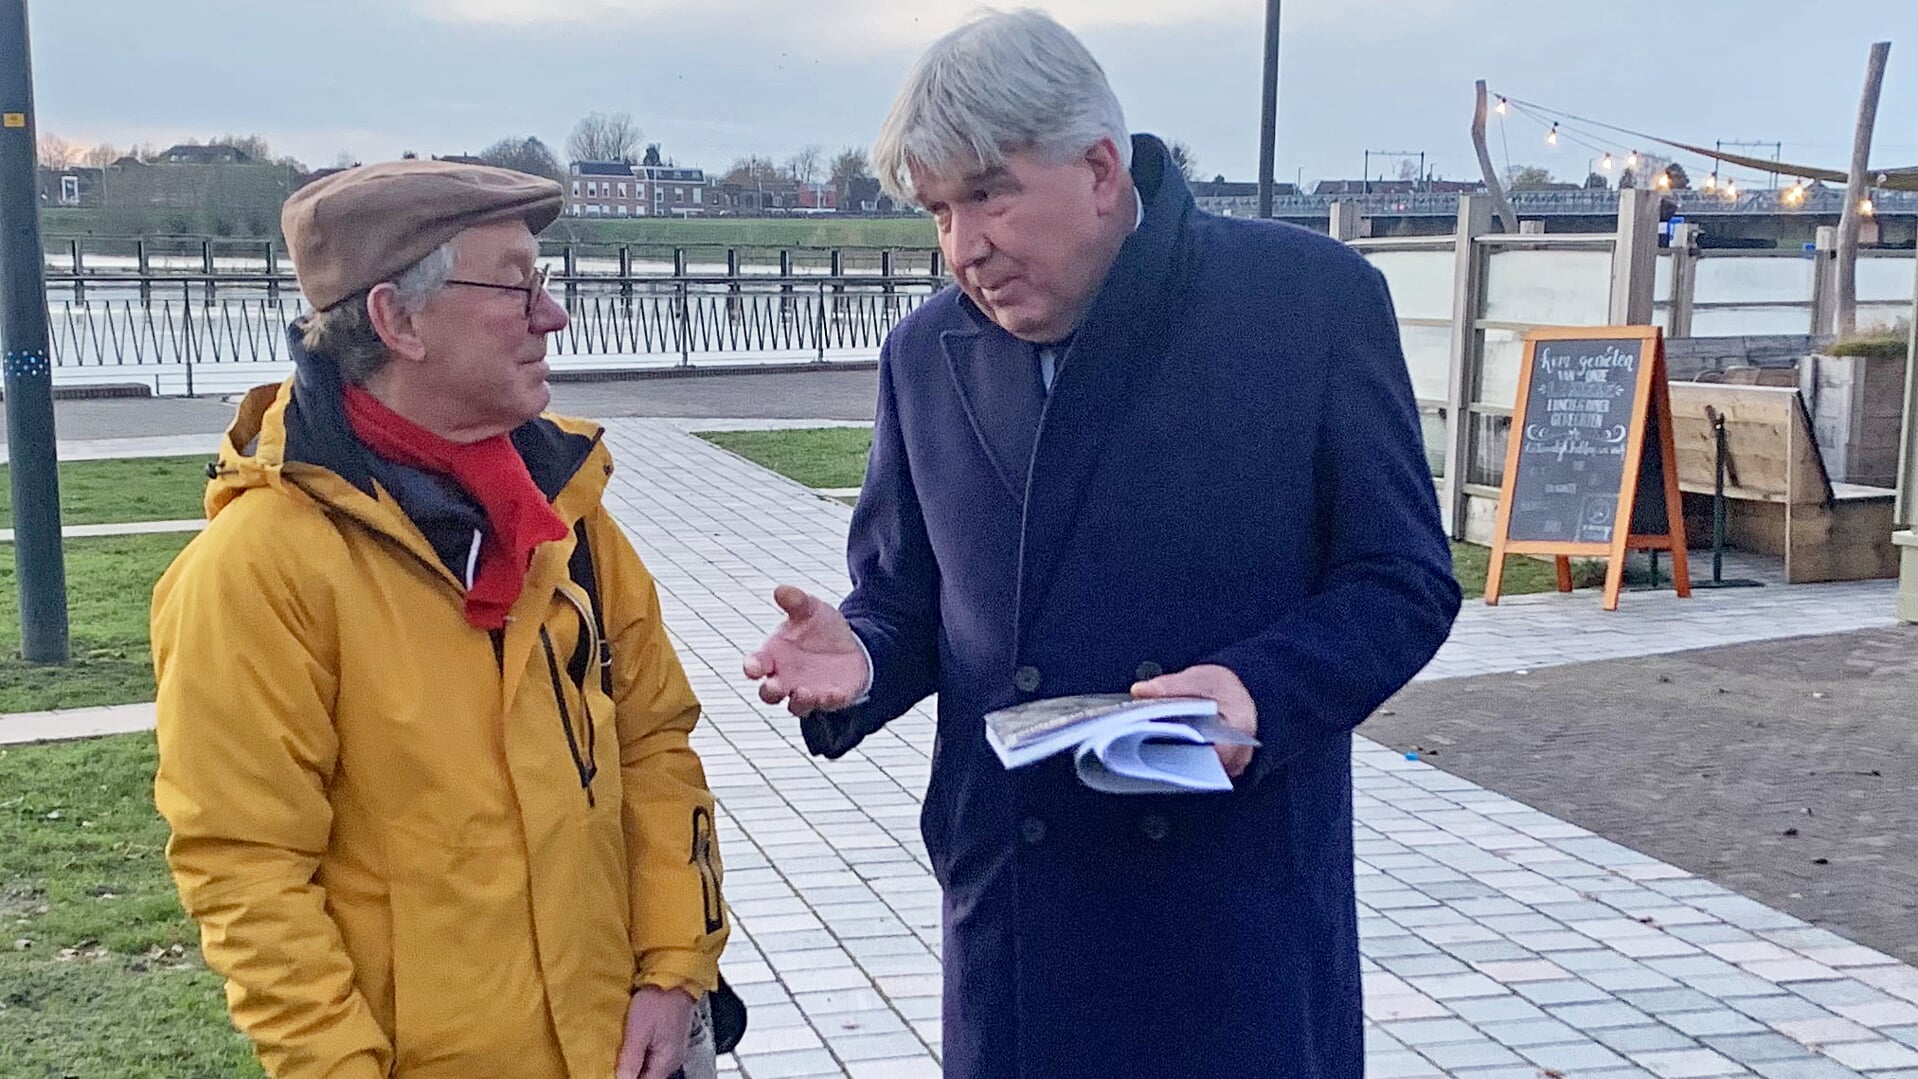 Burgemeester Wimar Jaeger (rechts) op de IJsselkade in gesprek met Menno Tamminga, auteur van het boek over de illegale pers in Zutphen tijdens WO II. Foto: Sander Grootendorst